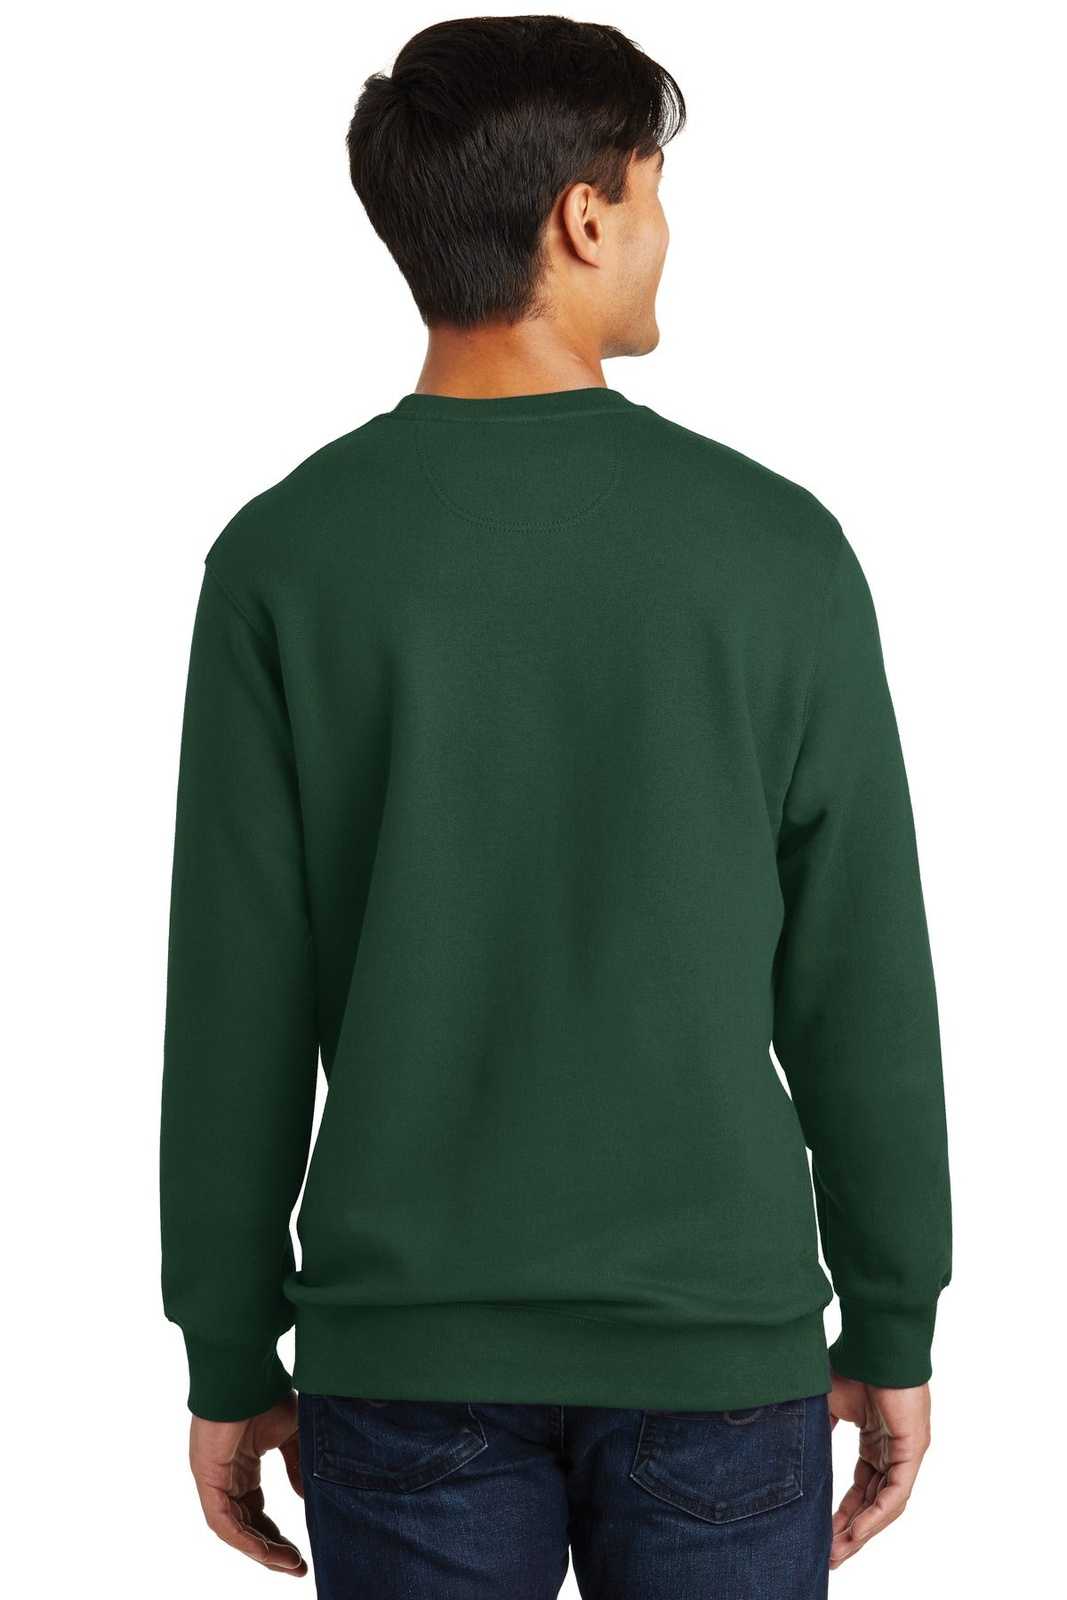 Port & Company PC850 Fan Favorite Fleece Crewneck Sweatshirt - Forest Green - HIT a Double - 1